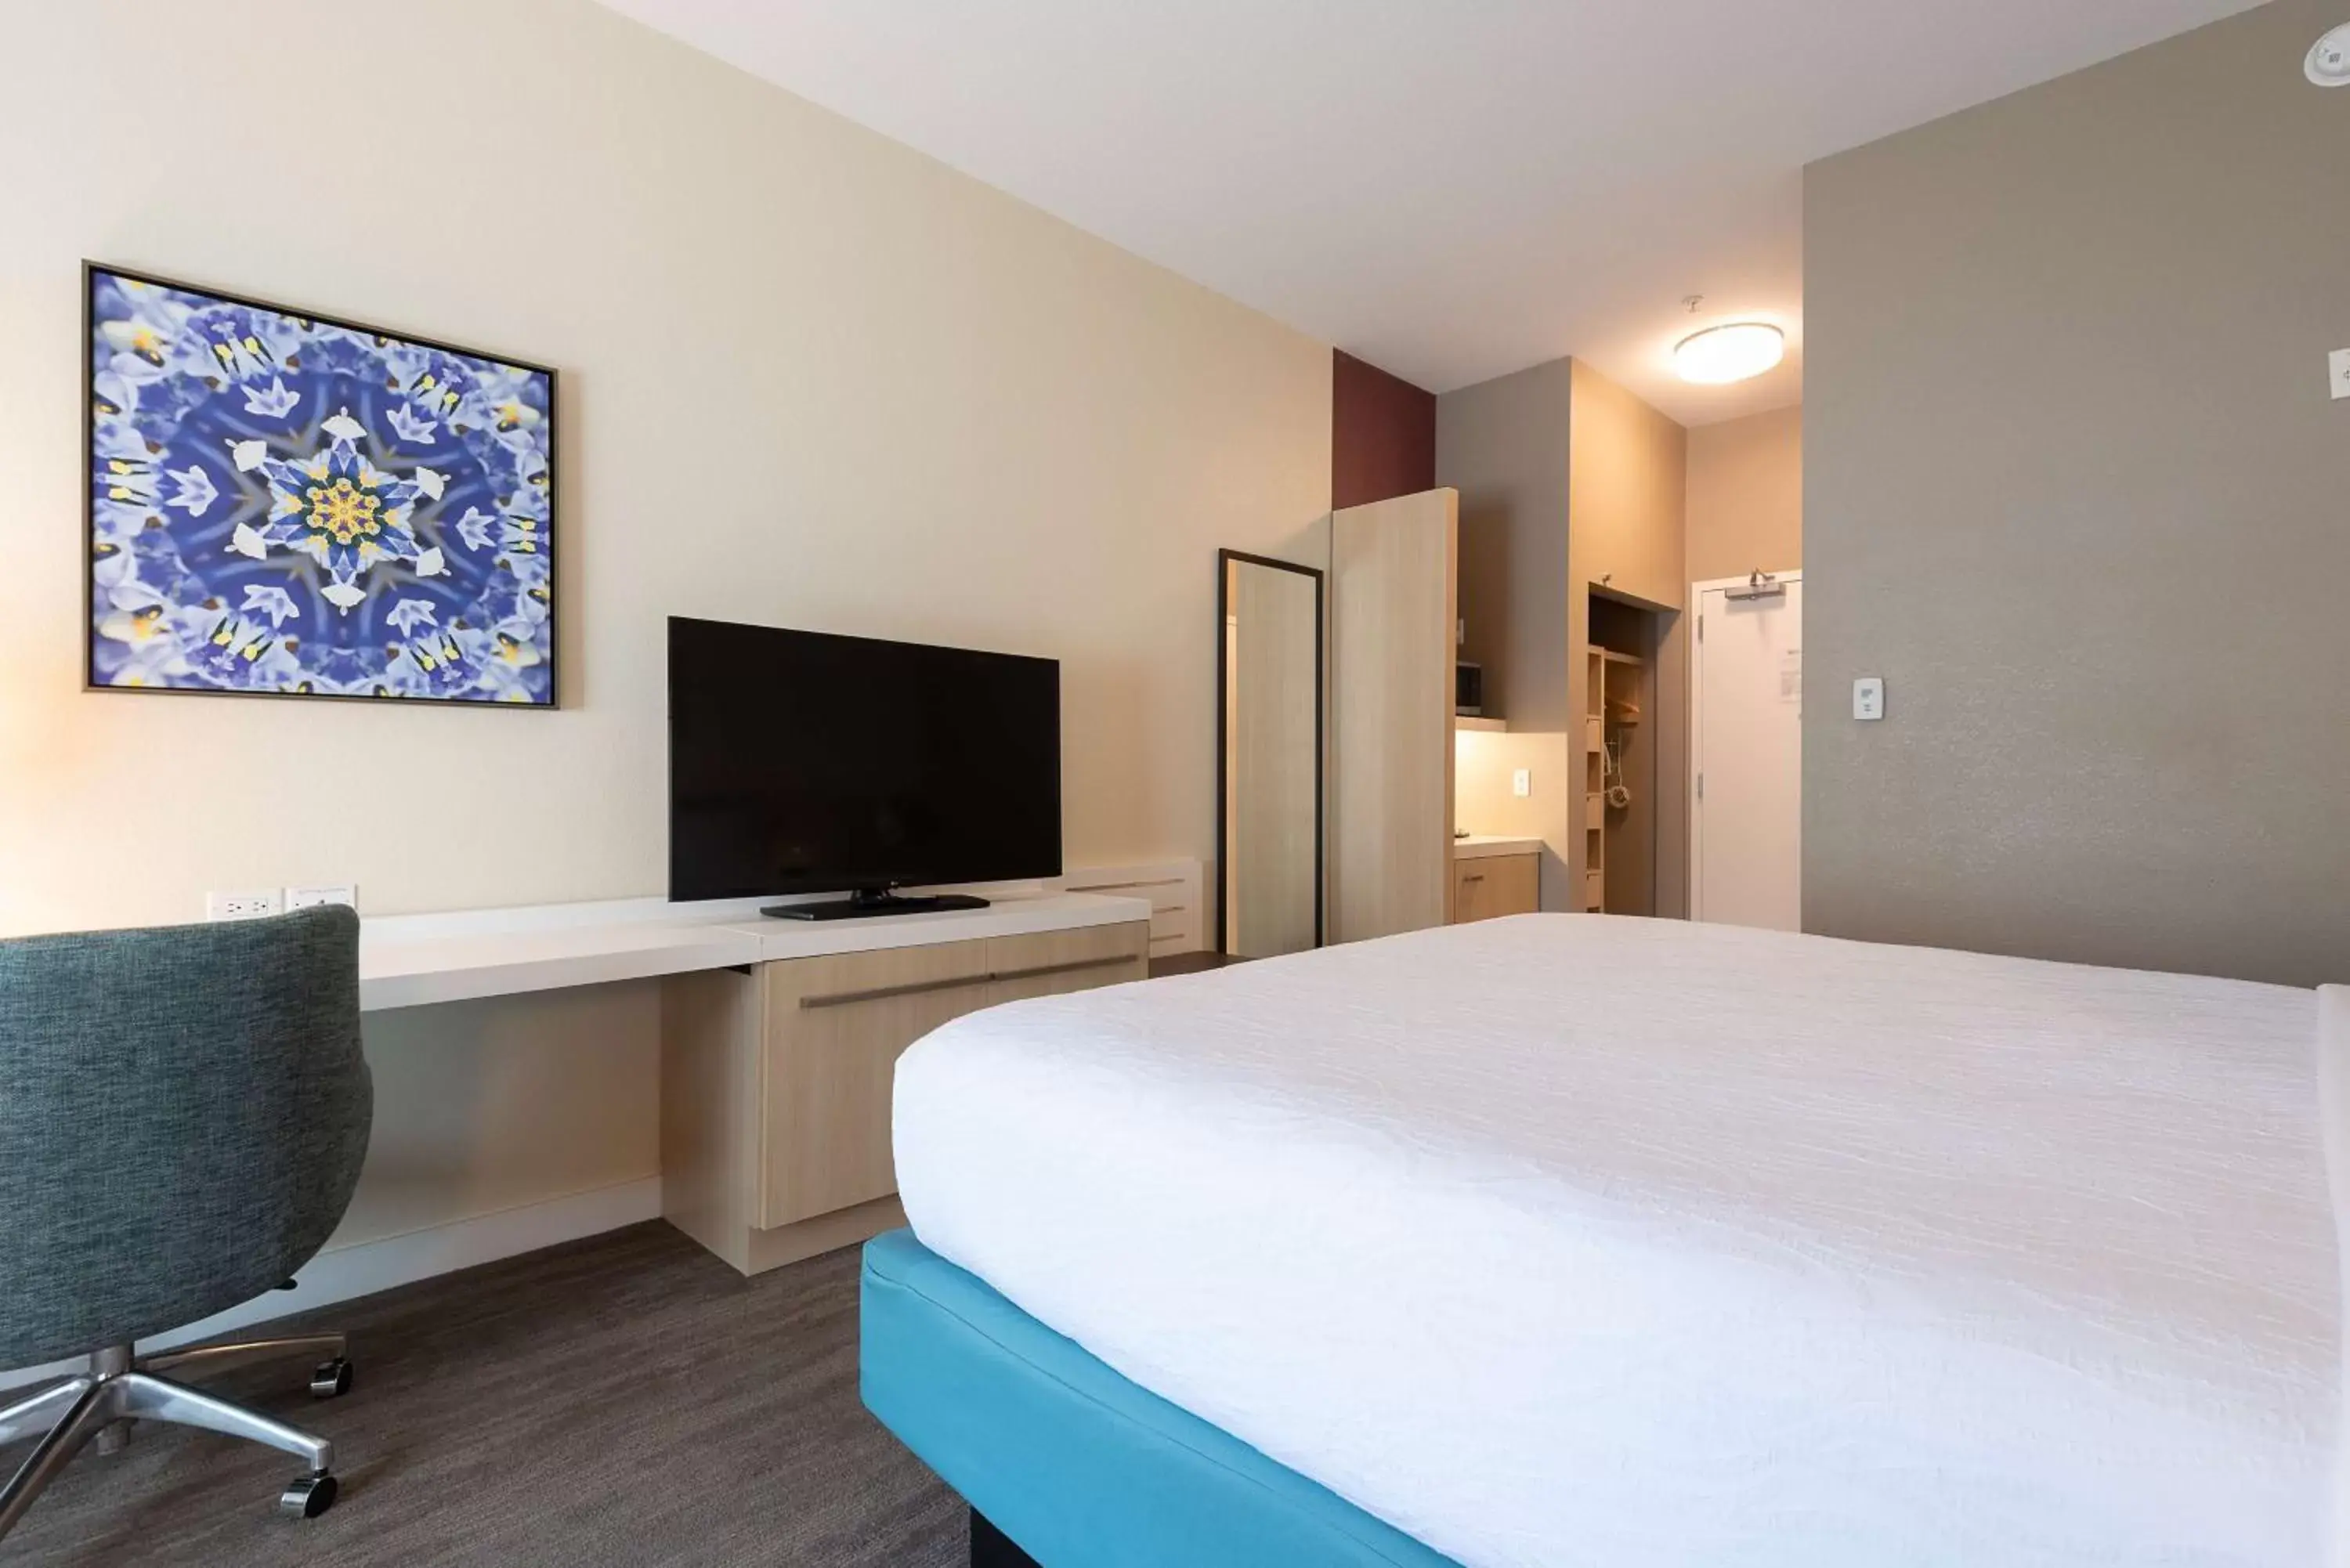 Bedroom, TV/Entertainment Center in Hilton Garden Inn Calabasas